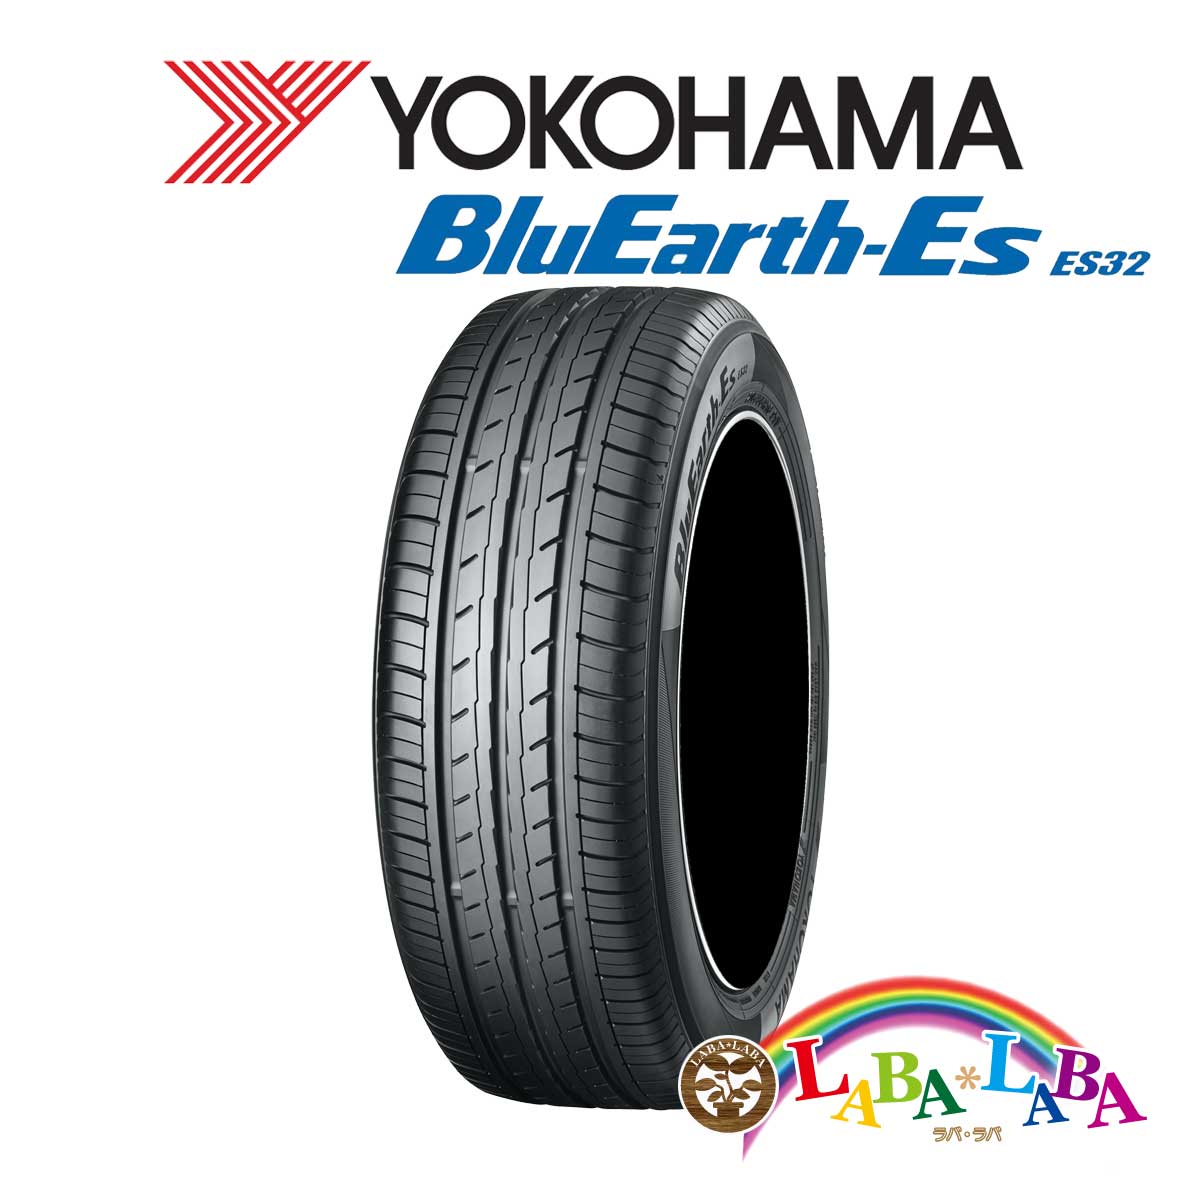 YOKOHAMA ヨコハマ BluEarth-Es ブルーアース ES32 185⁄65R15 88S サマータイヤ 4本セット :  ラバラバ 店